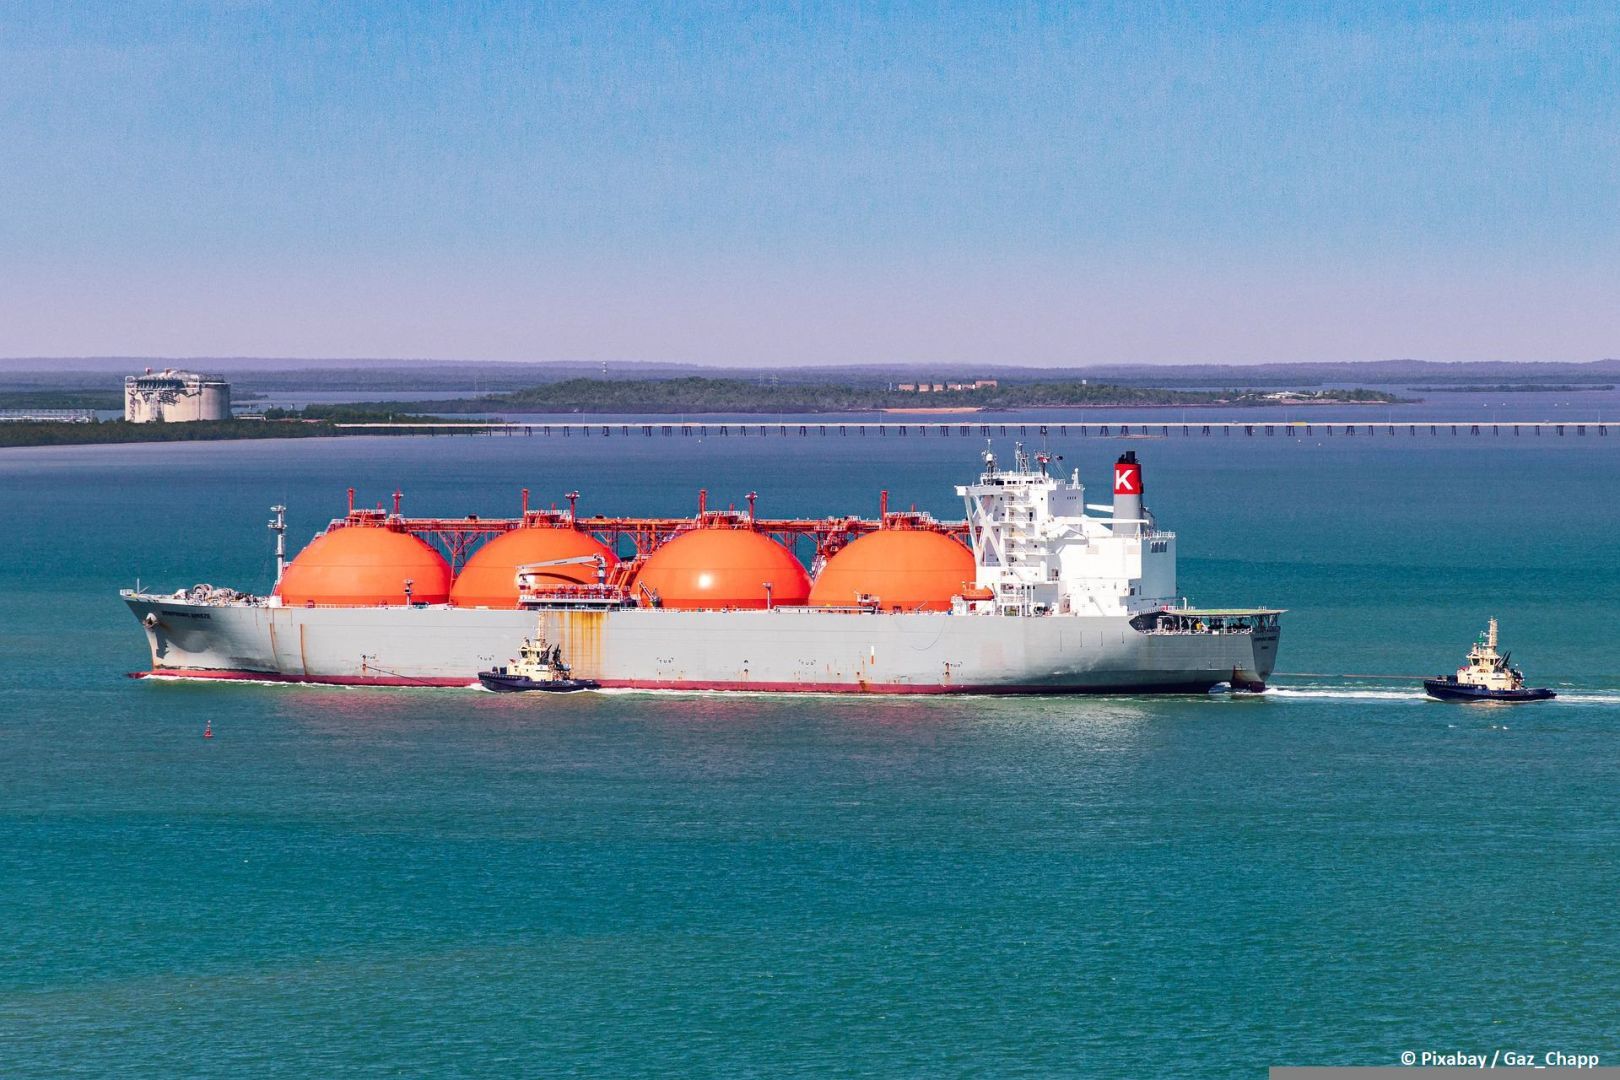 Türkei und Oman unterzeichnen 10-Jahres-Vertrag über jährliche LNG-Lieferungen